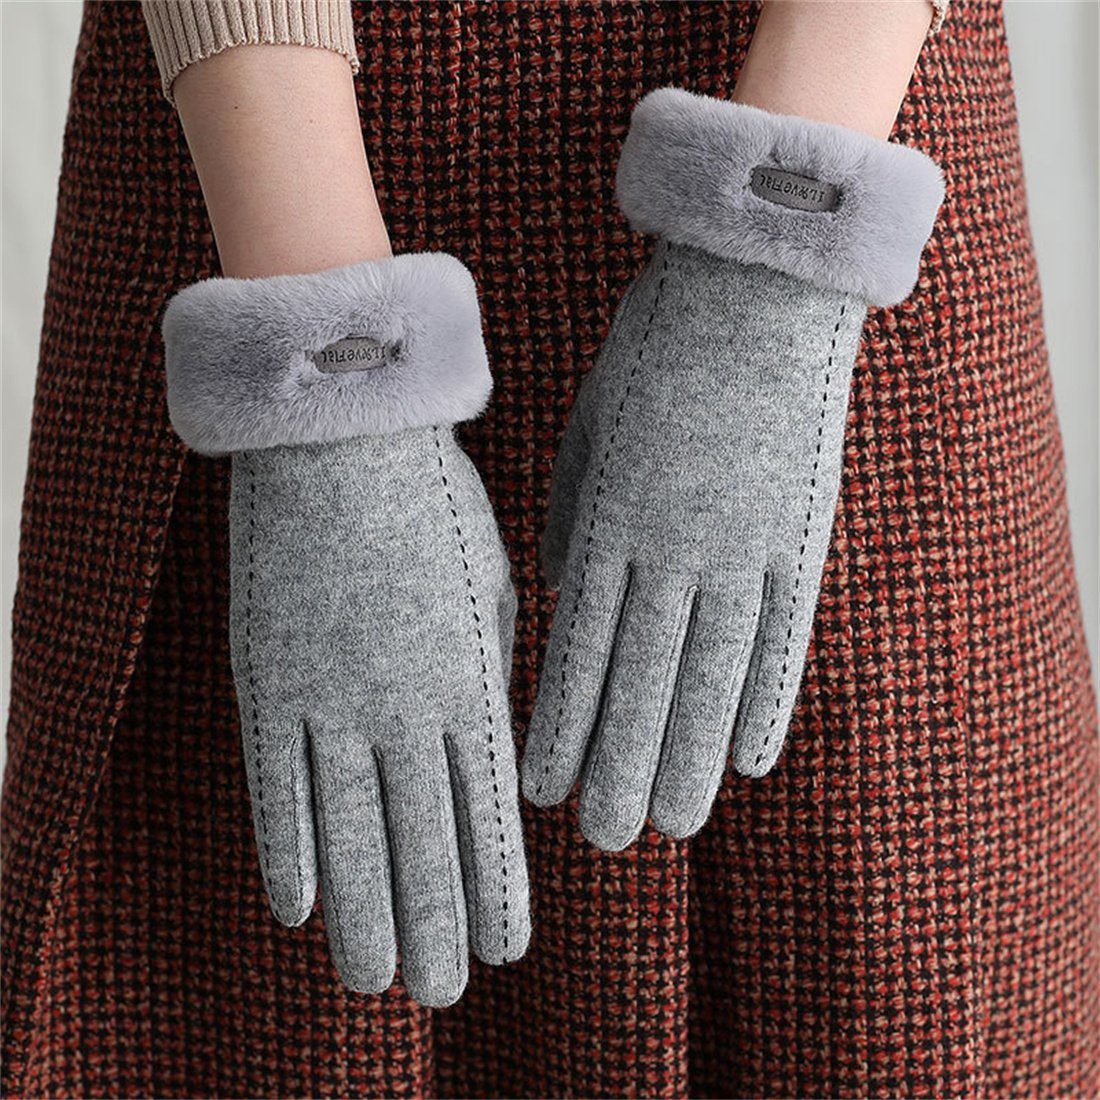 Fleecehandschuhe Damen Winter Reithandschuhe,Faux Cashmere Touchscreen Grau DÖRÖY Warme Handschuhe